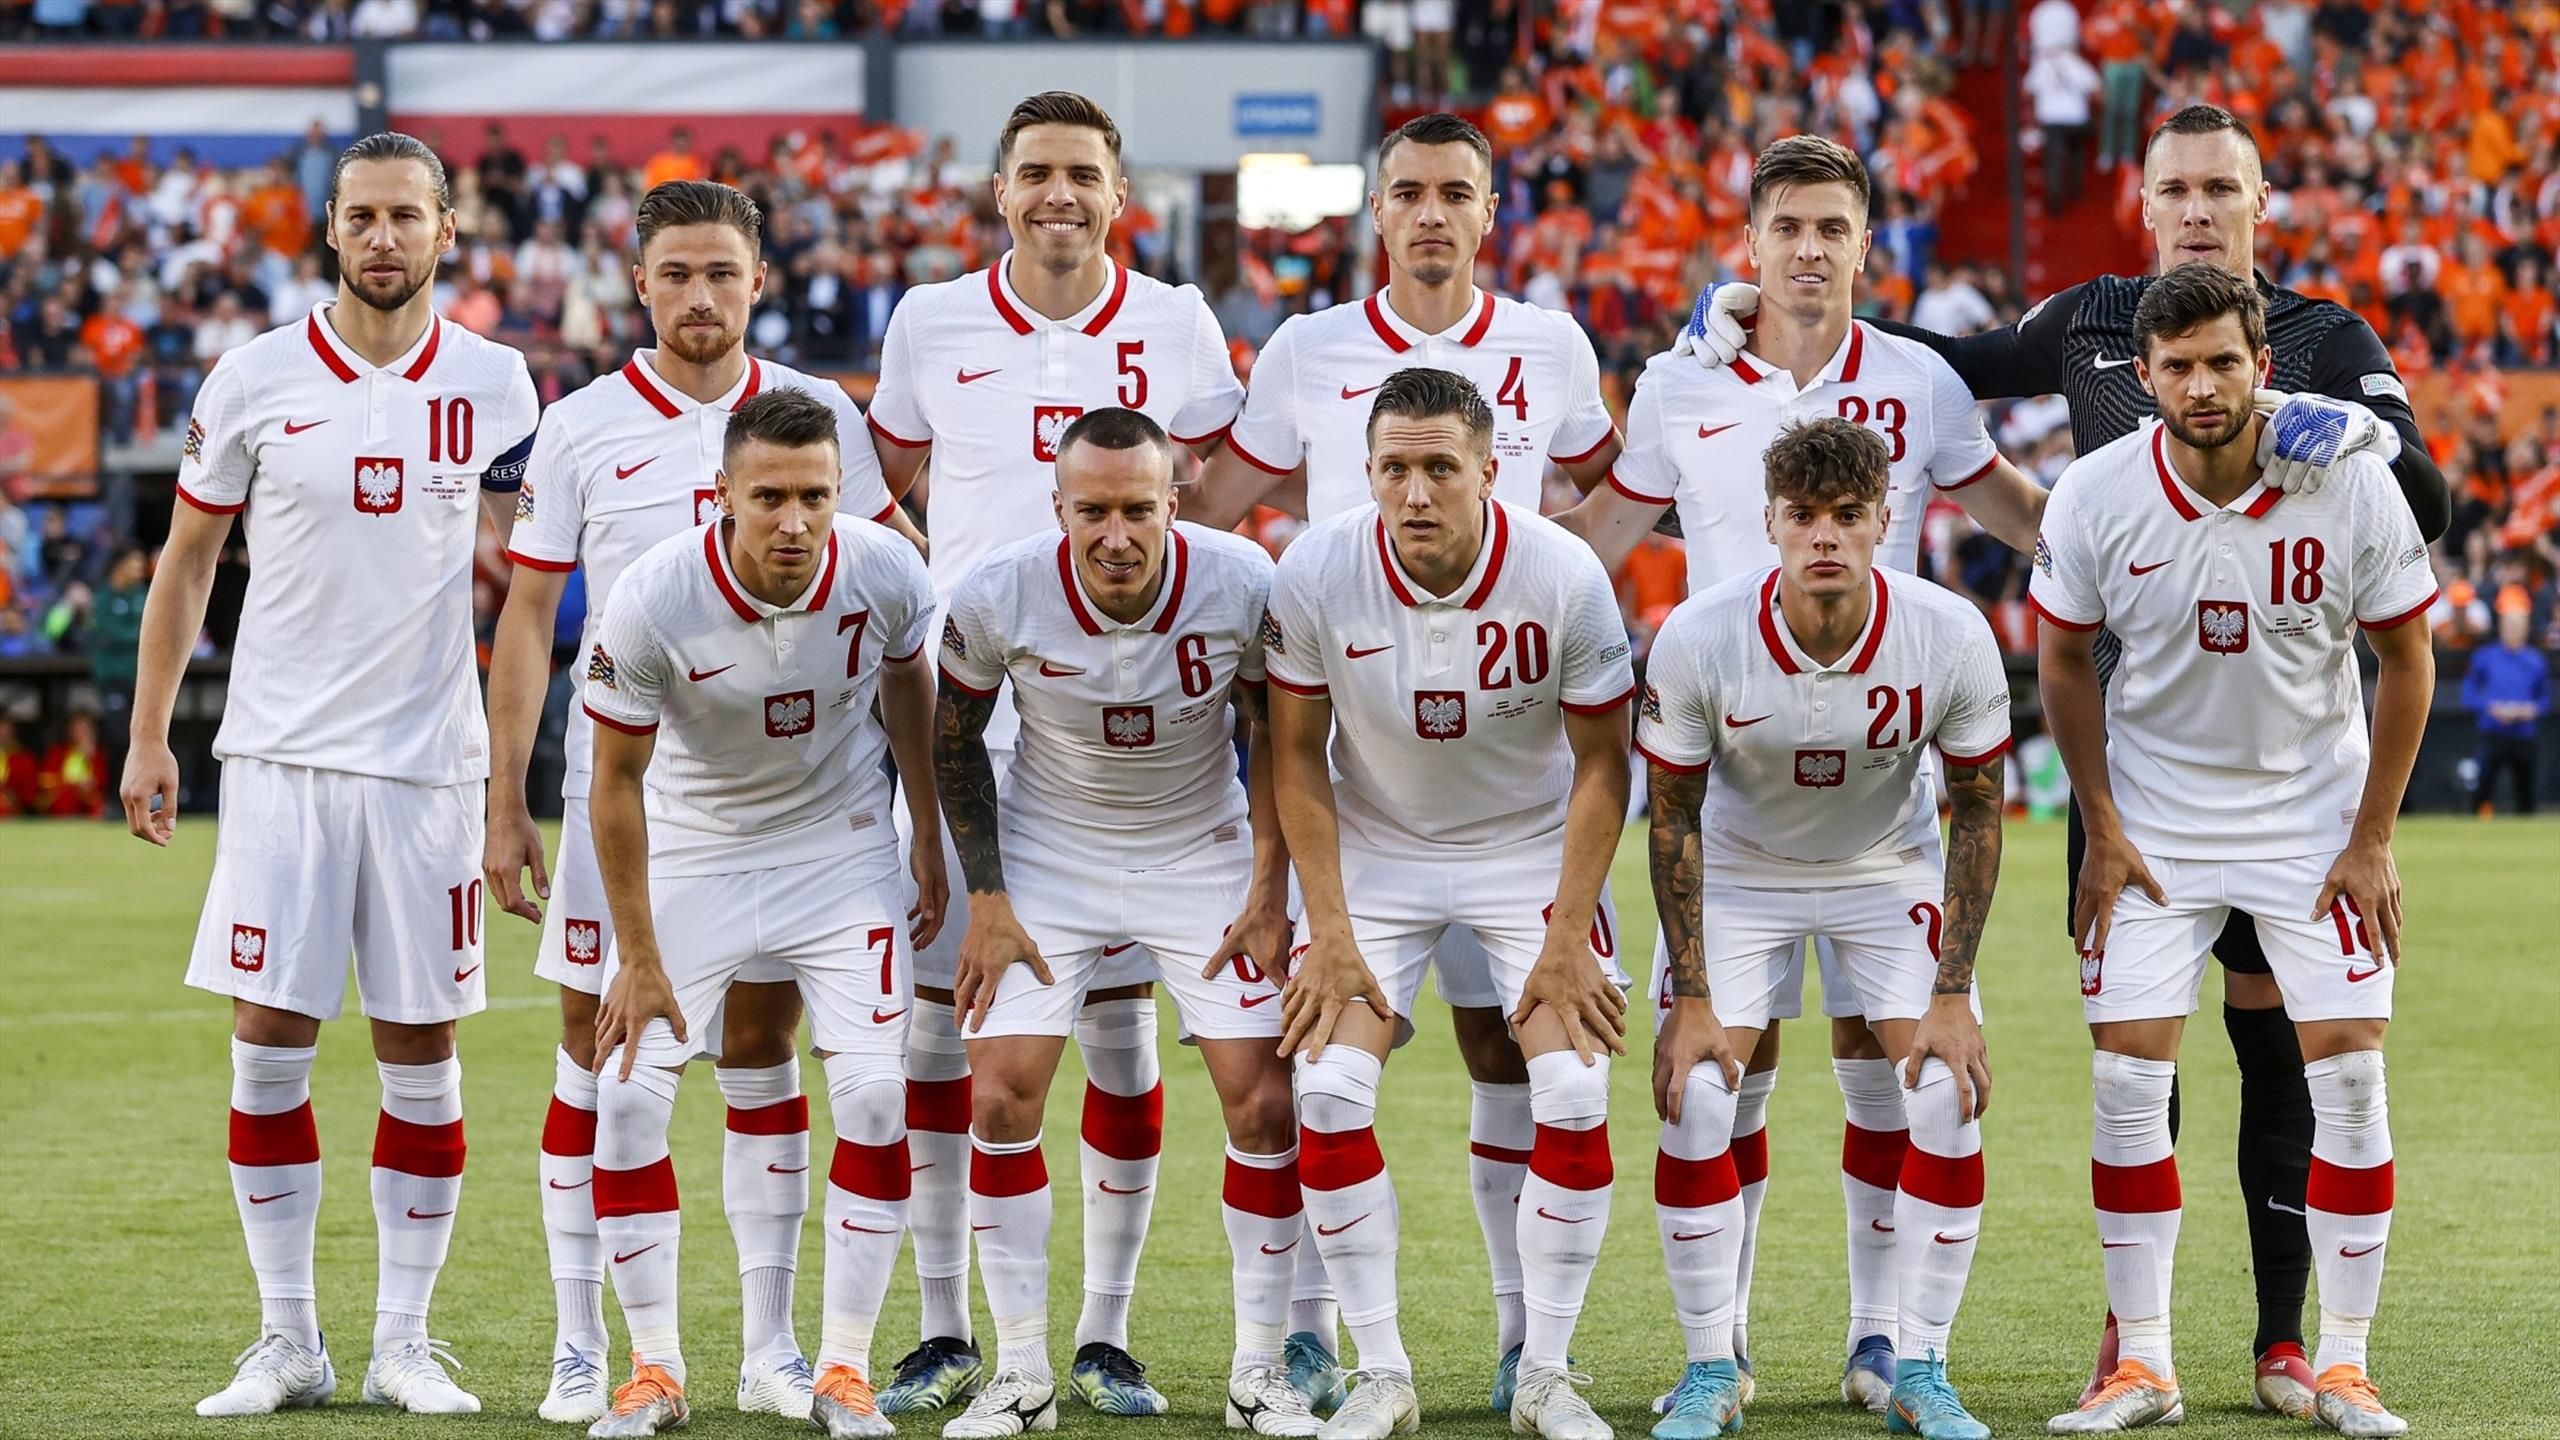 Holandia Polska Oceny Polaków Po Meczu Ligi Narodów Piłka Nożna Eurosport 